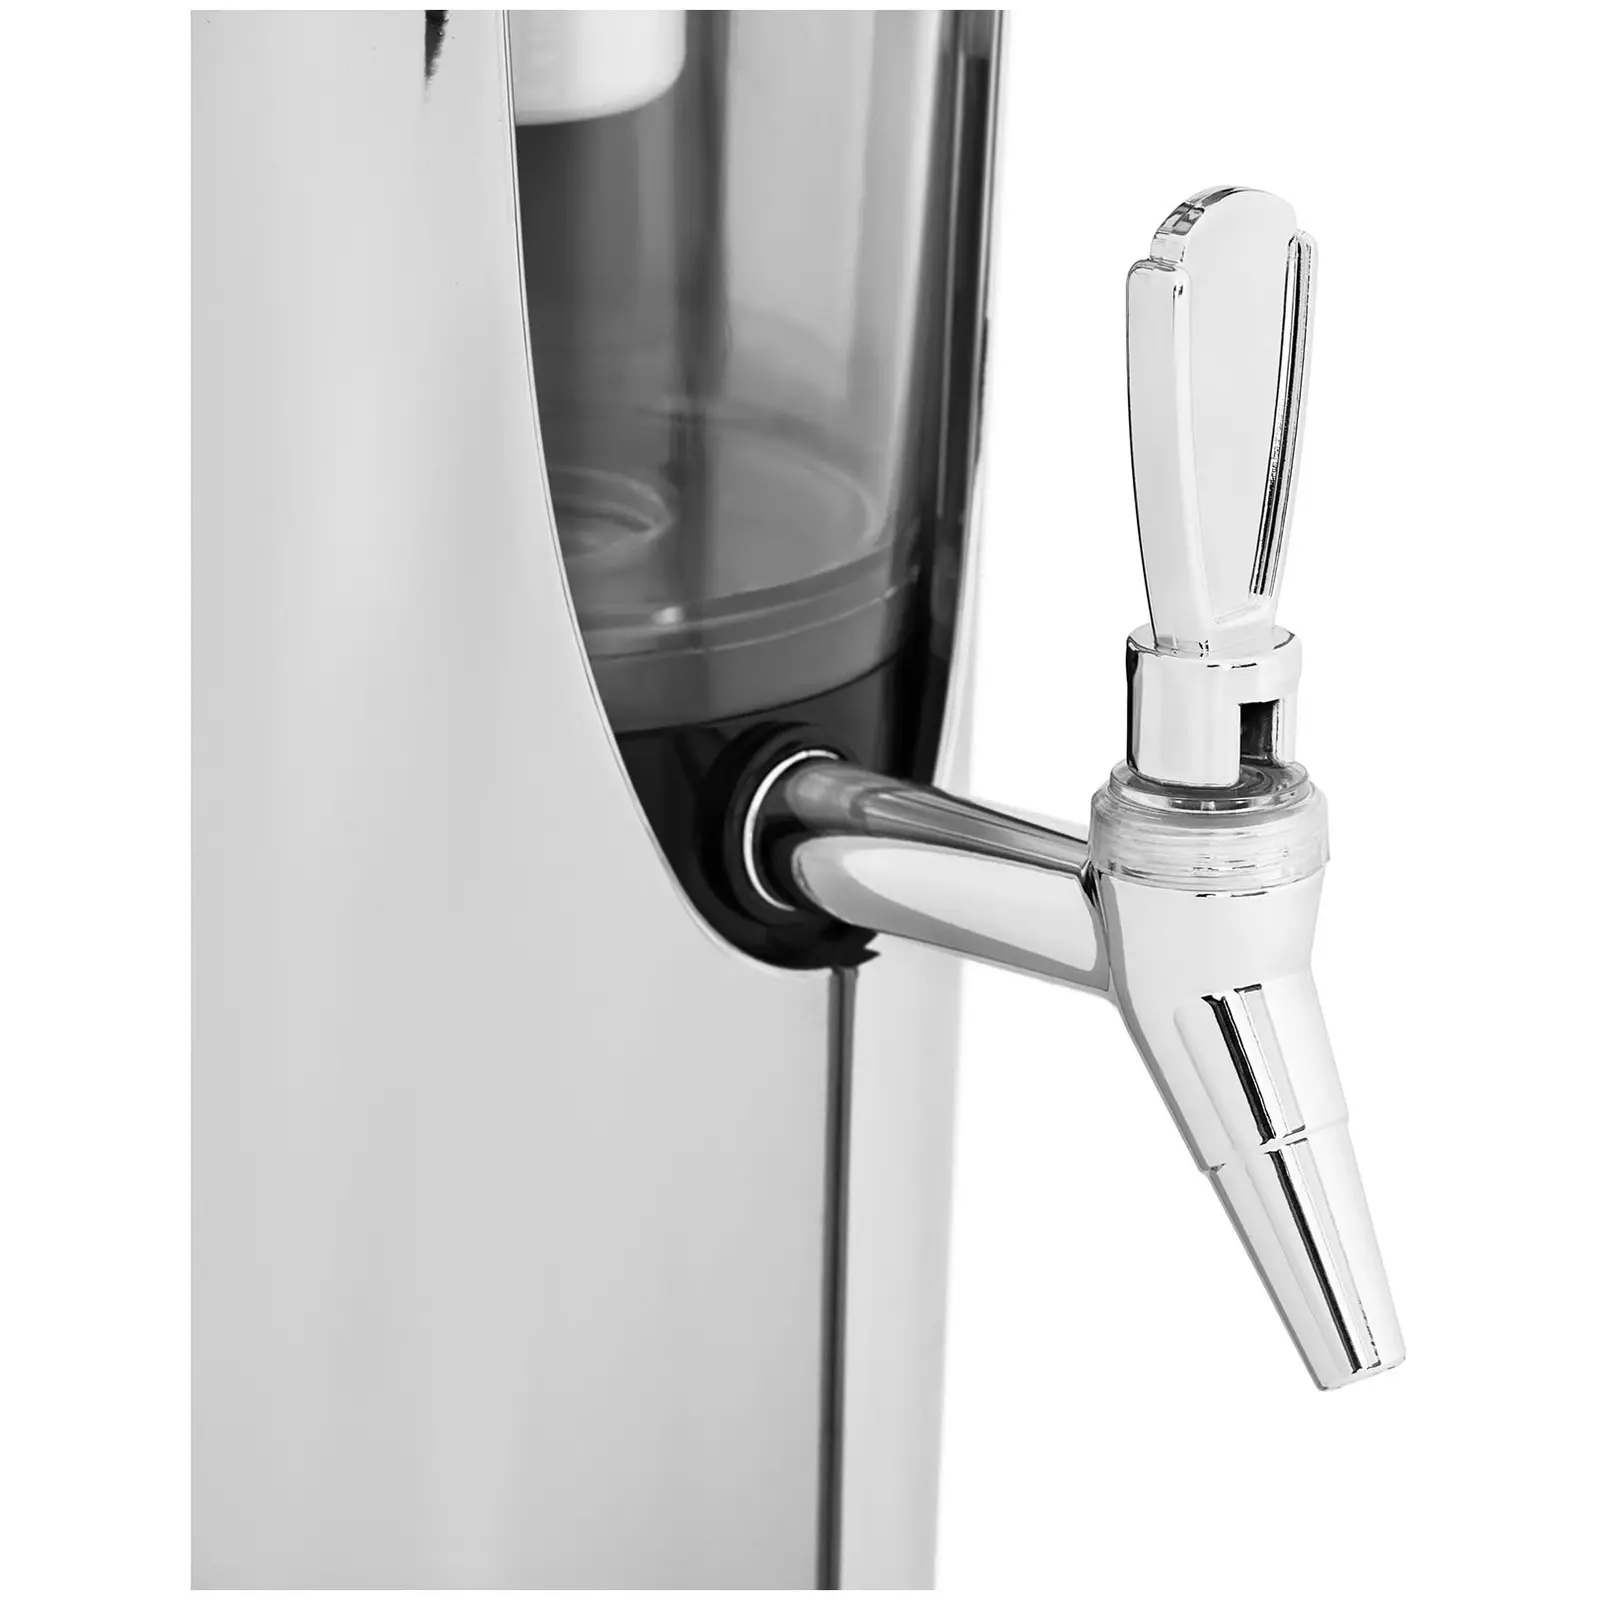 Juice Dispenser - 3 L - kjølesystem - for glass opptil 198 mm - med LED-belysning - sølv - Royal Catering